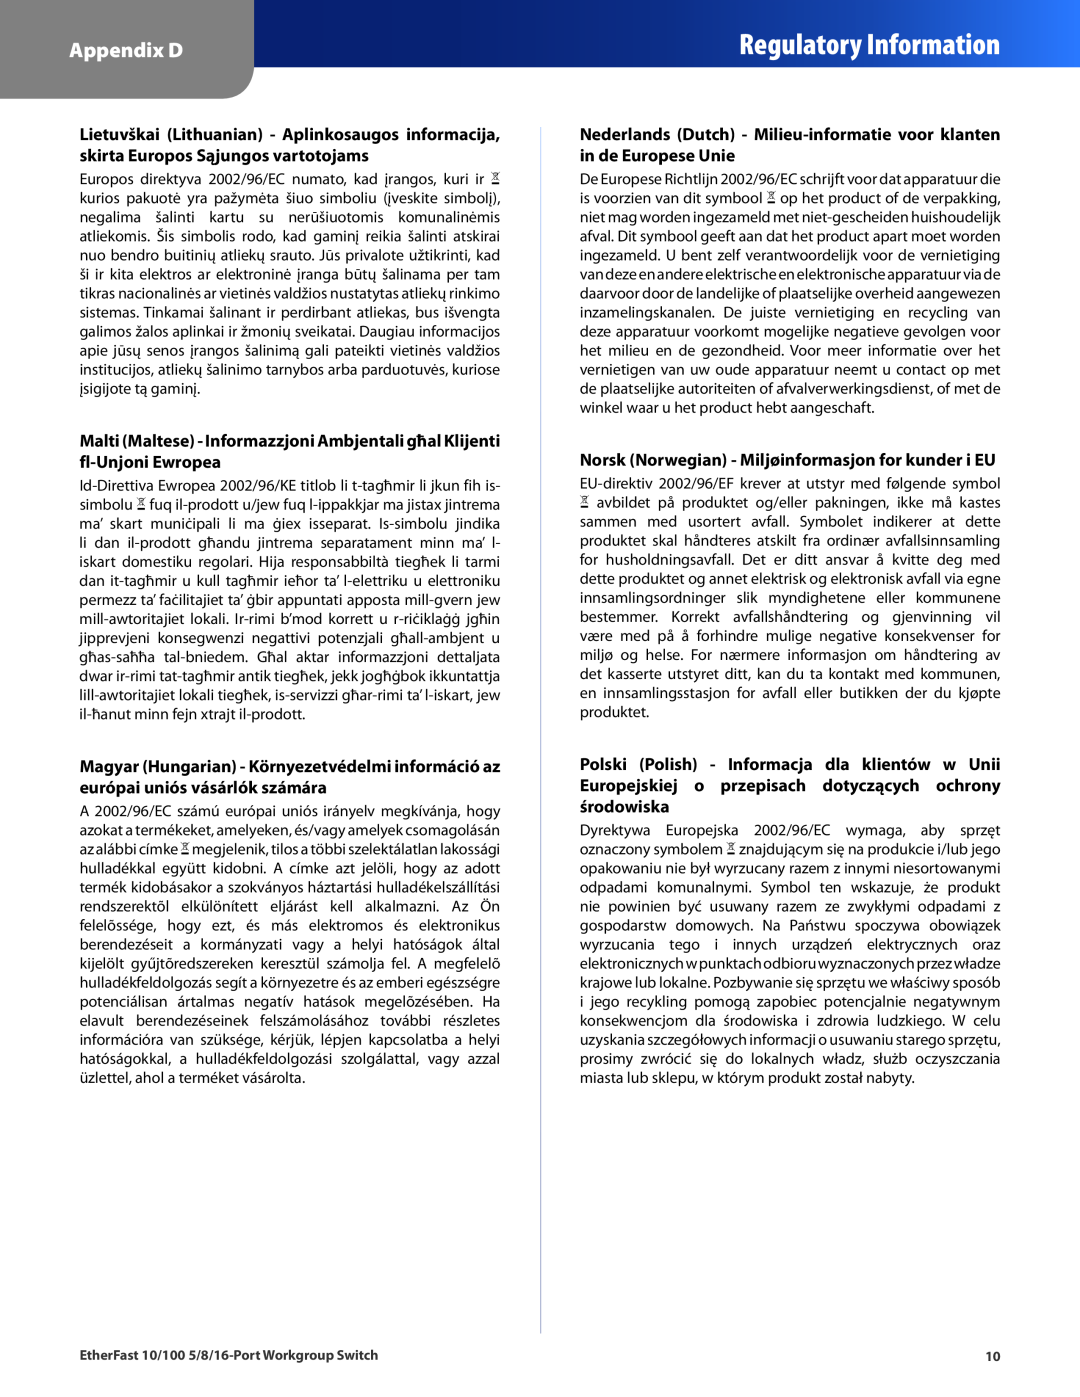 Linksys EZXS16W Regulatory Information, Appendix D, Nederlands Dutch - Milieu-informatie voor klanten in de Europese Unie 